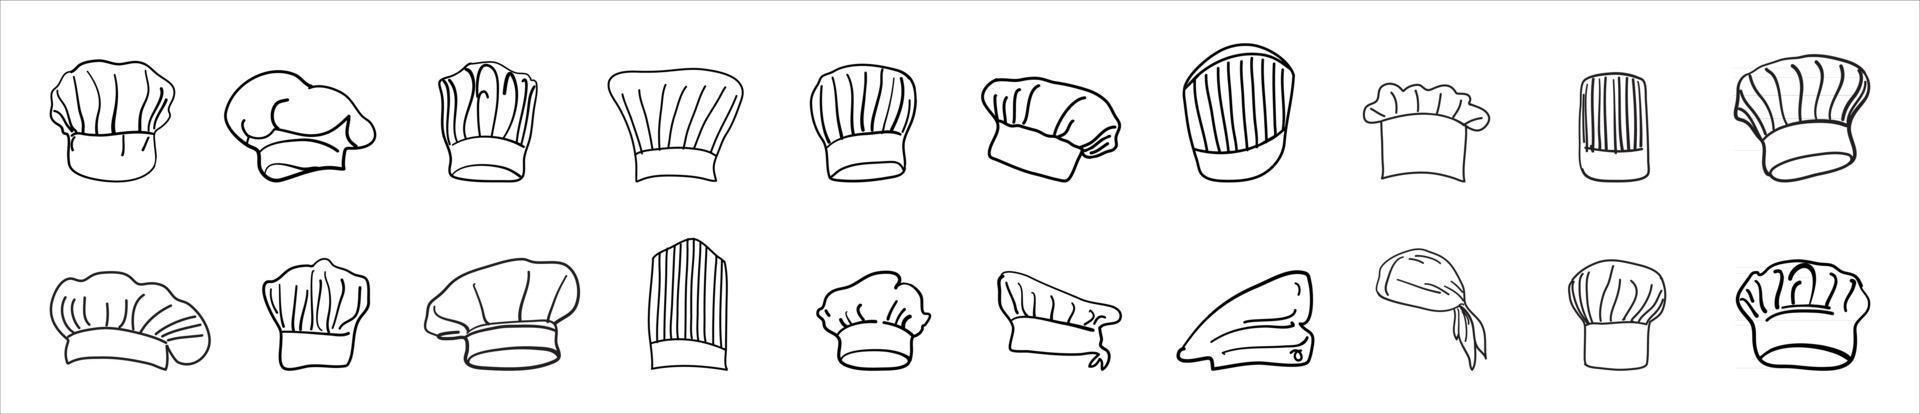 Kochmütze Zeichnung Logo gesetzt vektor